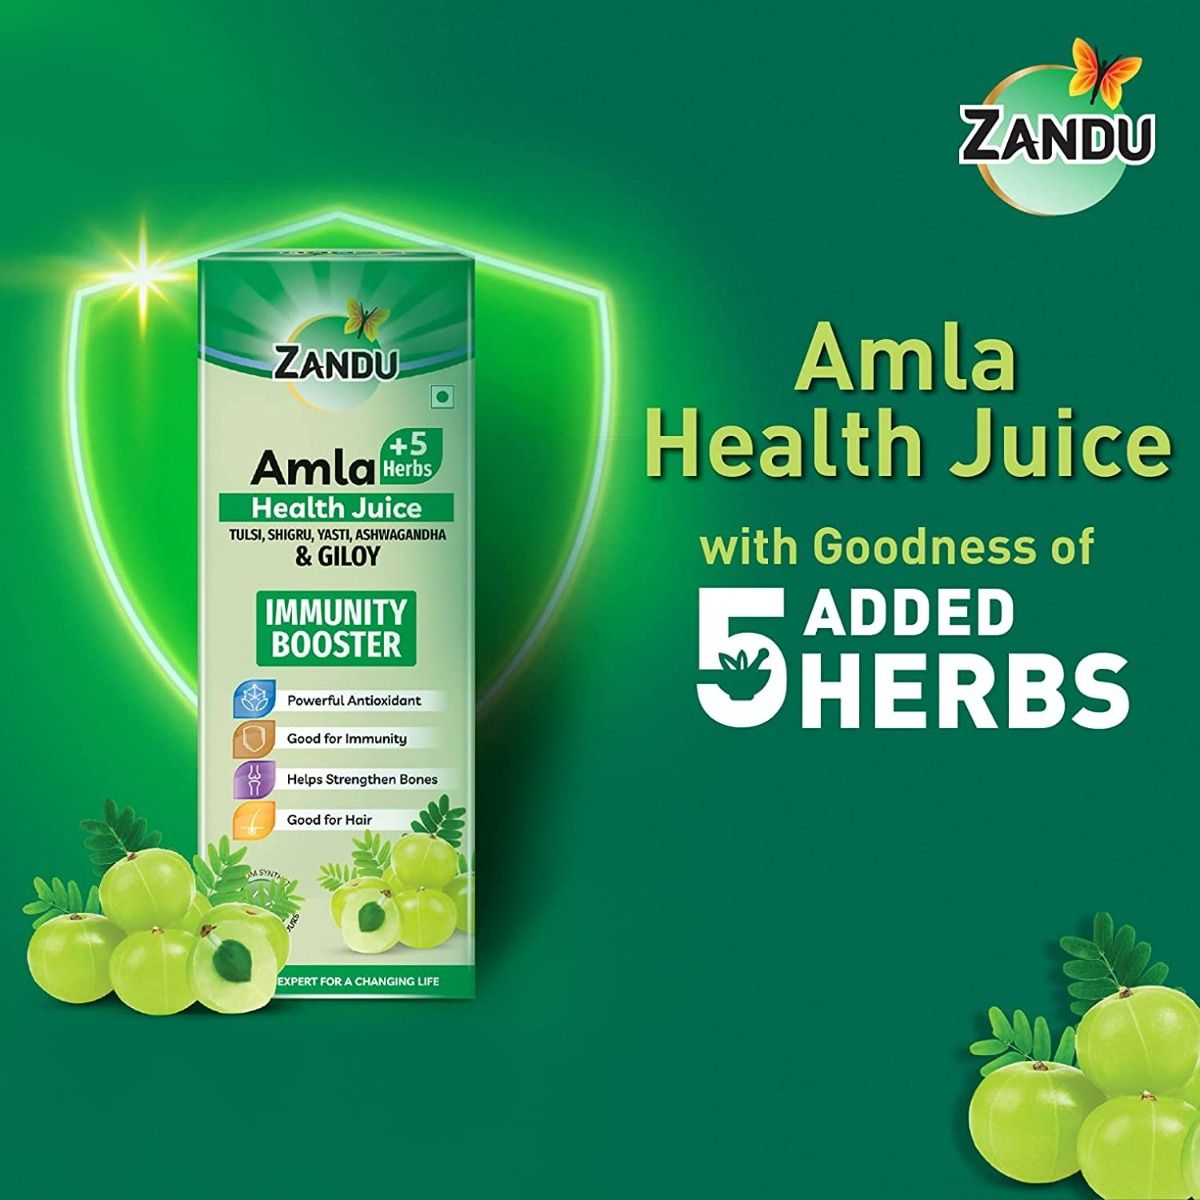 Zandu Amla +5 Herbs Health Juice, 1000 ml, Pack of 1 